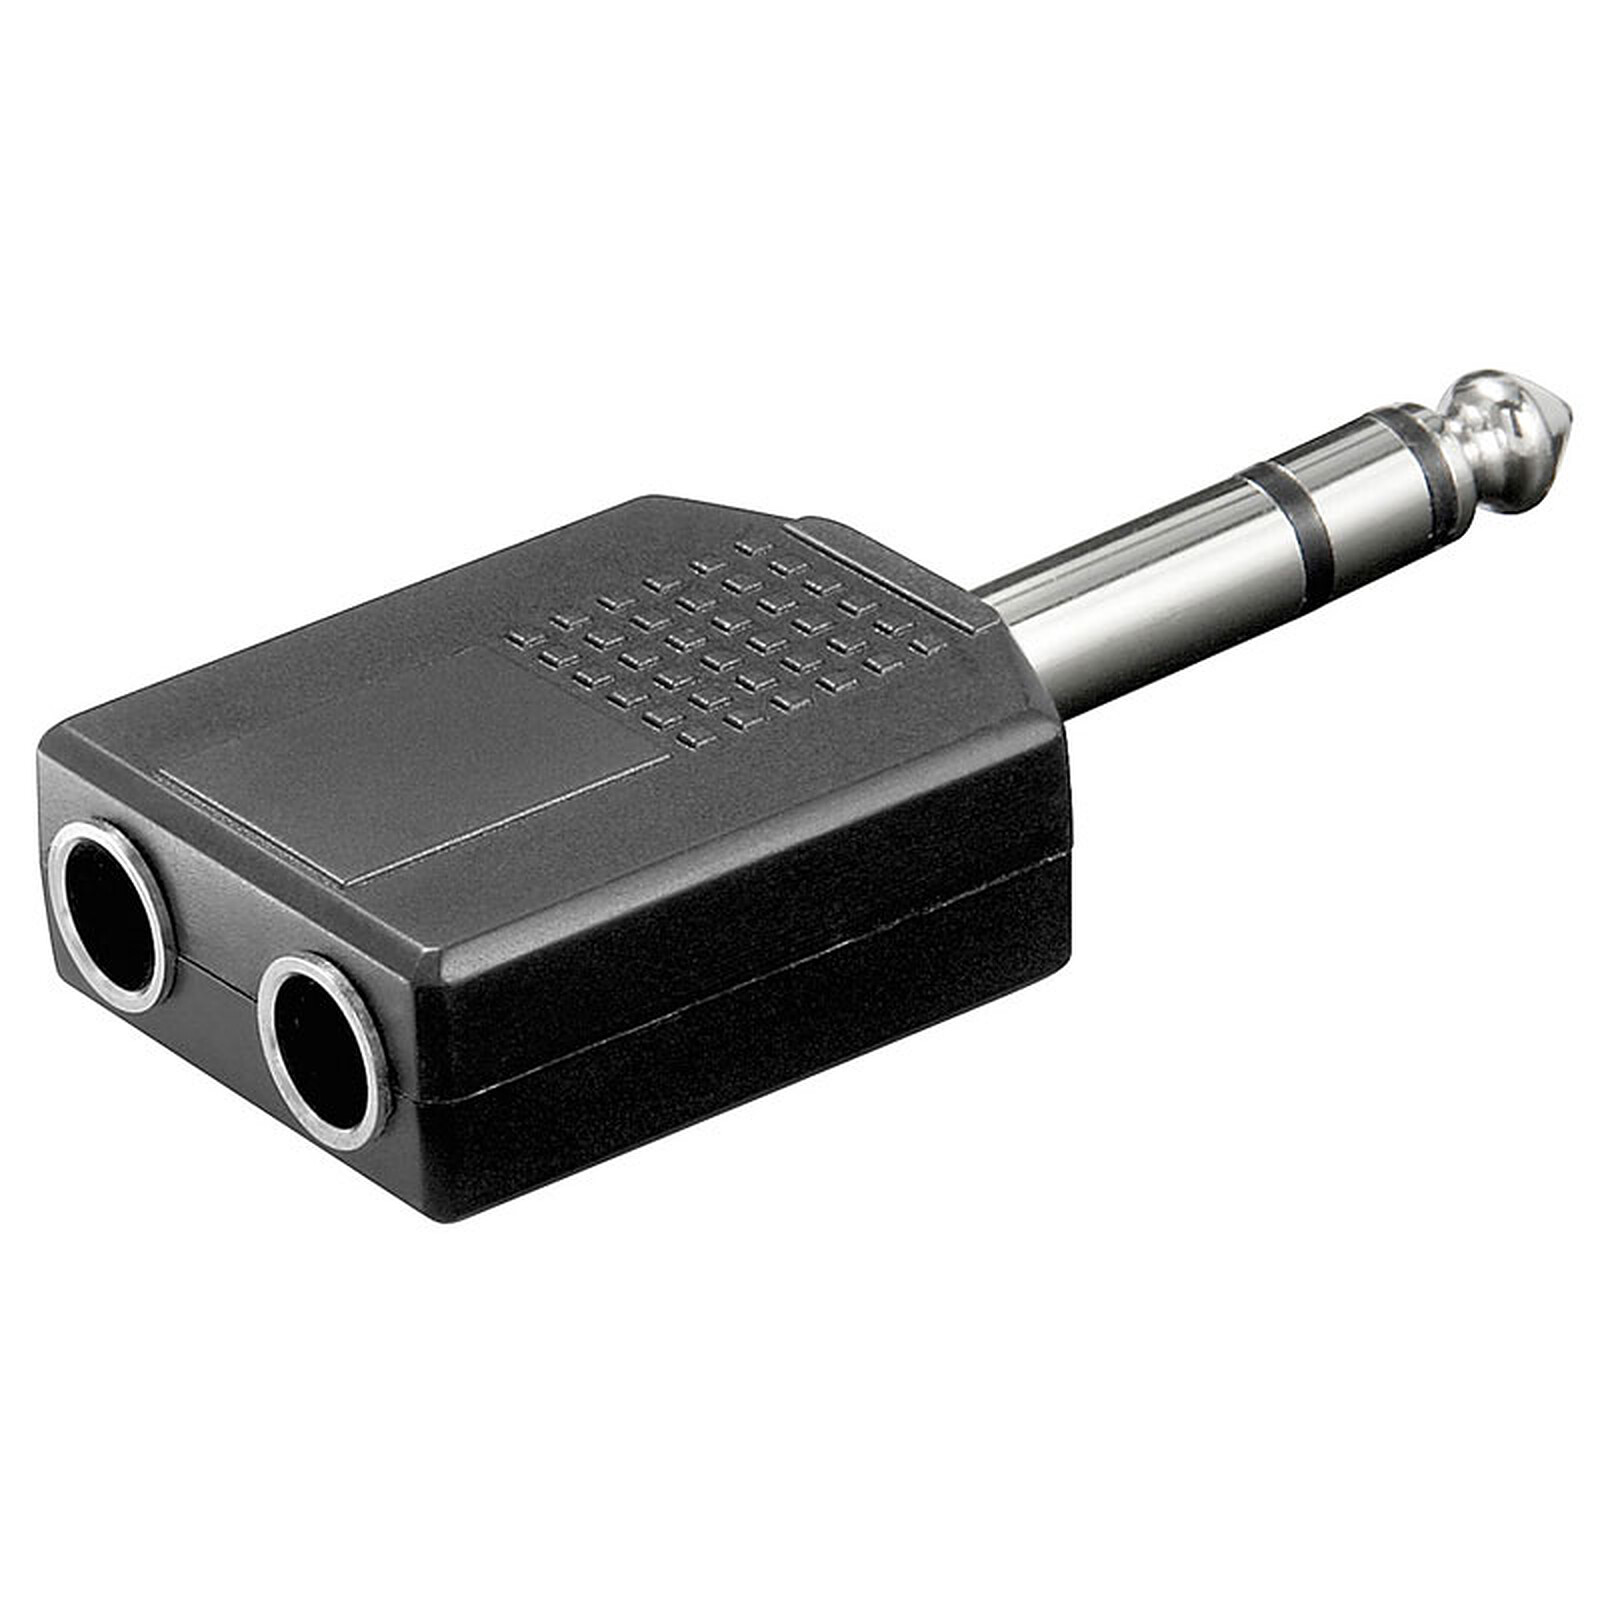 Dédoubleur Jack 6.35 mm stéréo - Adaptateur audio - Garantie 3 ans LDLC